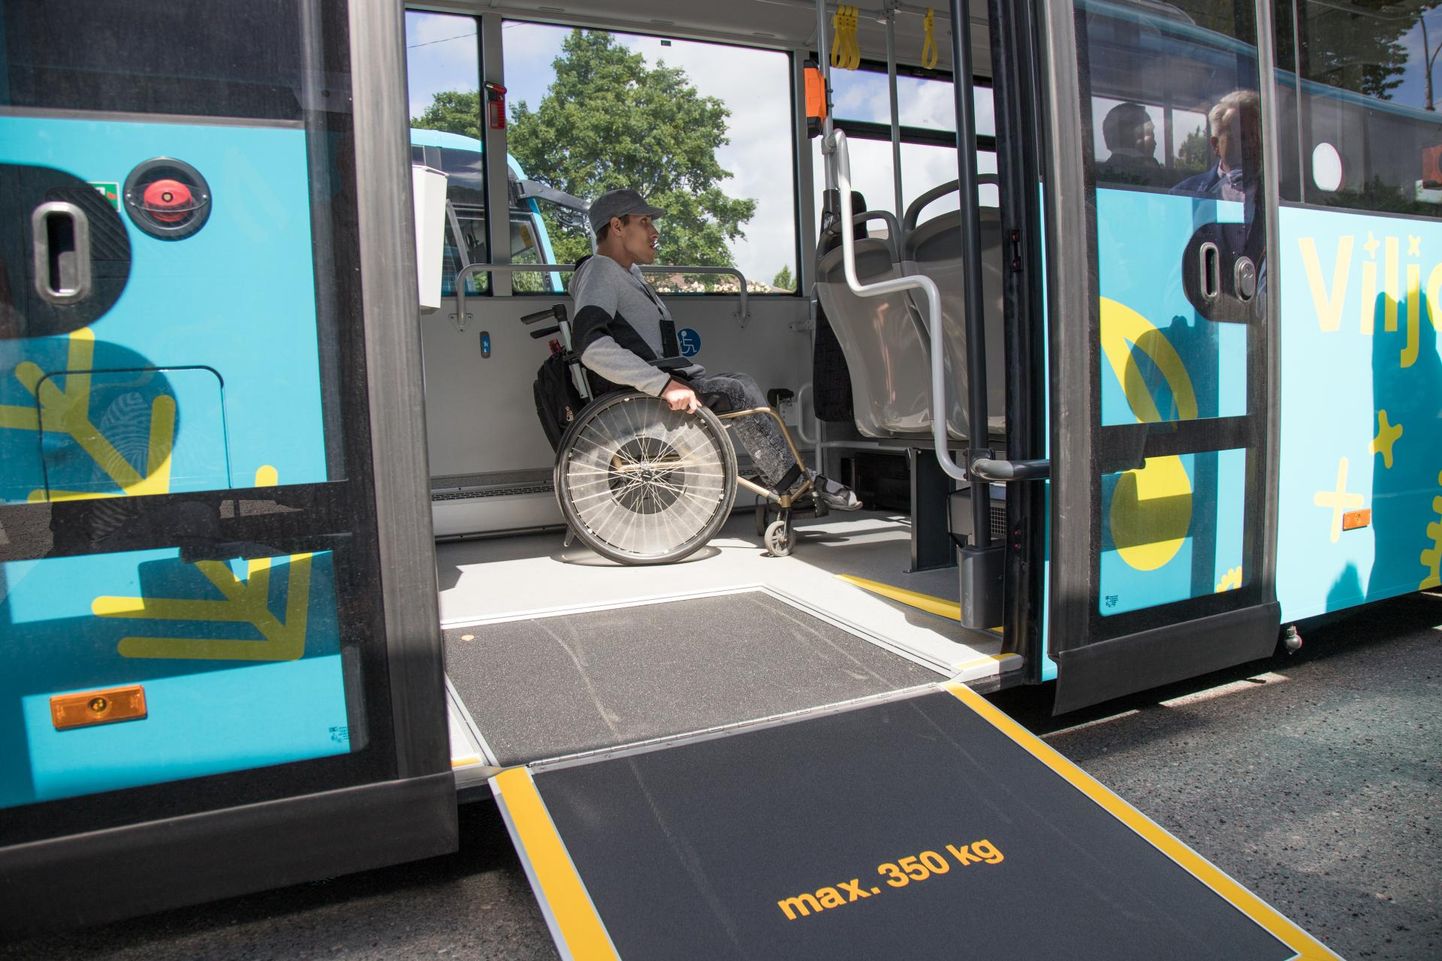 Tasuta sõita saama pidavaid eelkooliealisi ja puuetega inimesi see trall otse ei mõjuta. Bussiettevõtted ja riik peavad lihtsalt omavahel lahenduse leidma, kes maksab kulu. Pildil viljandlane Martin Nagel.